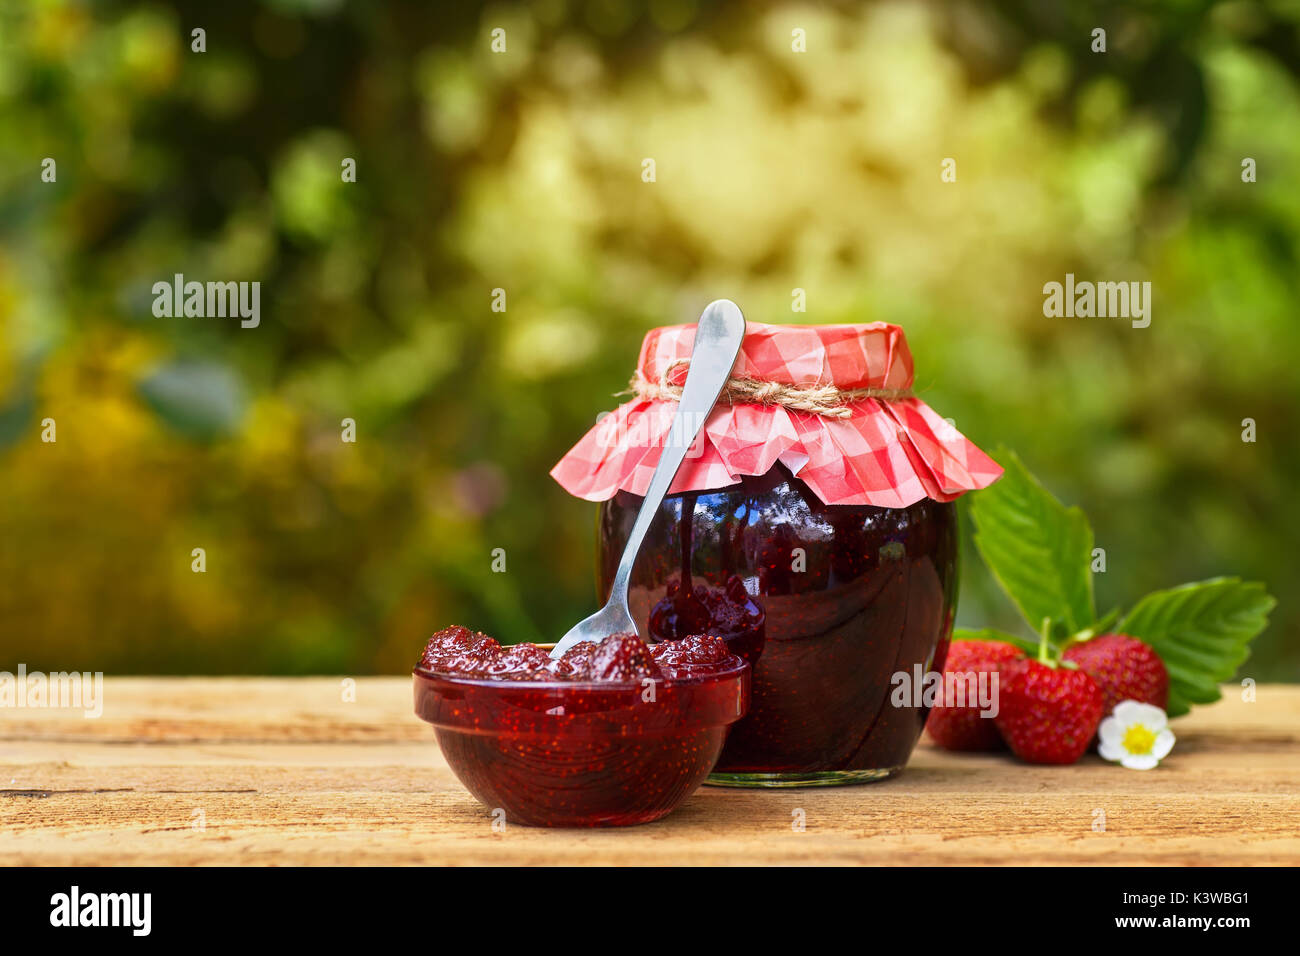 La confiture de fraise sur la table outdoor Banque D'Images